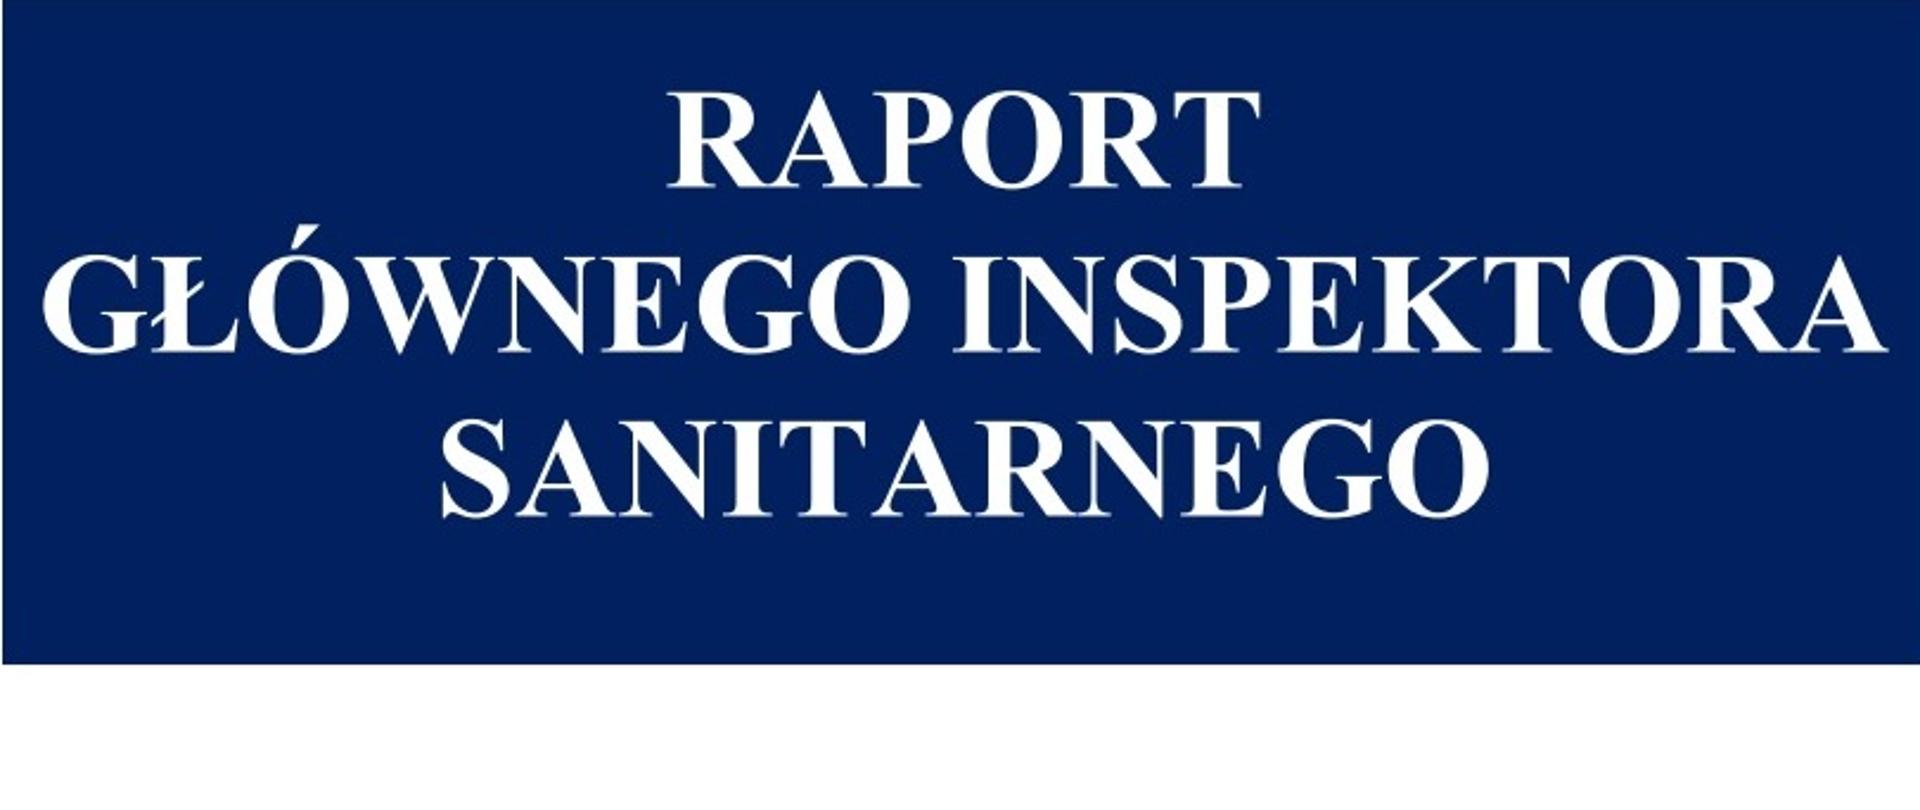 Biały napis "Raport Głównego Inspektora Sanitarnego" na granatowym tle 